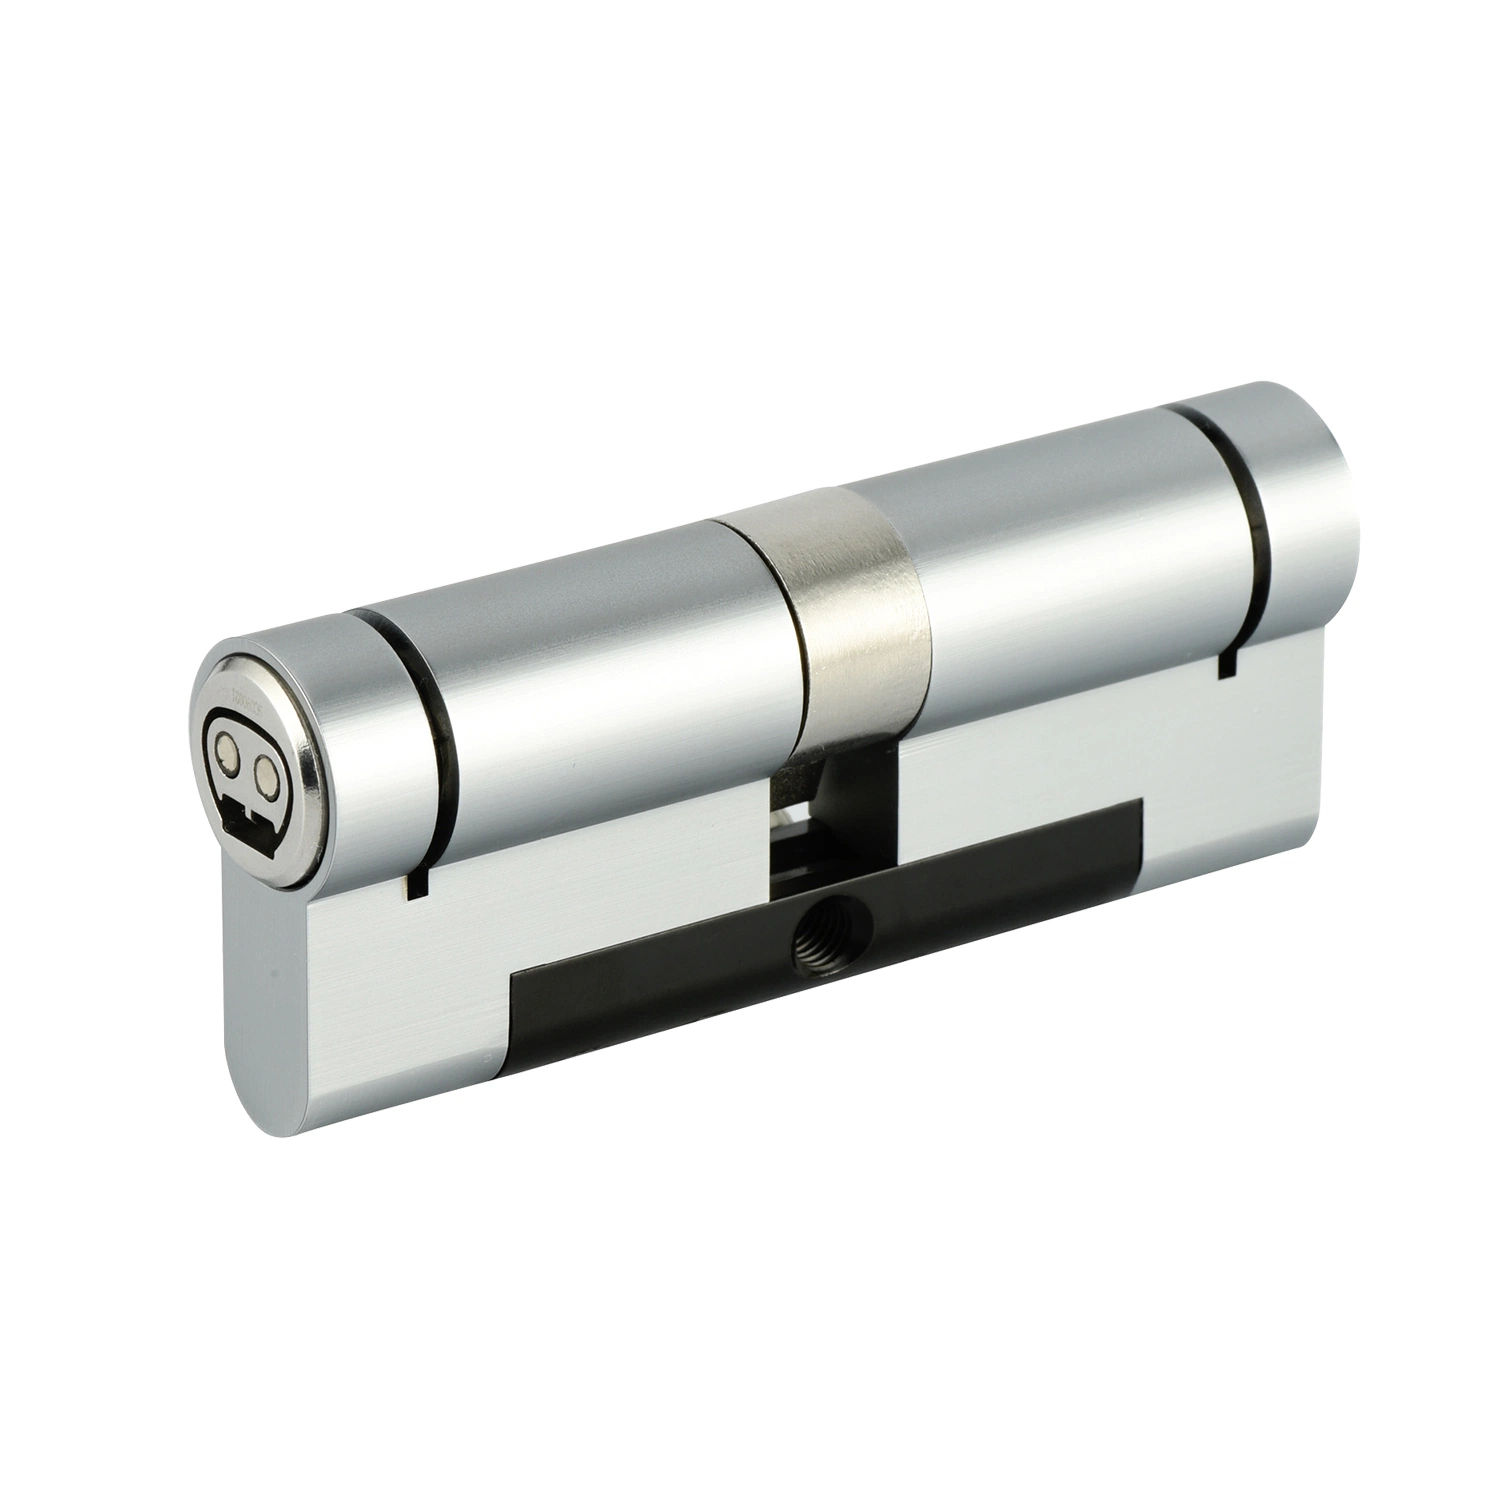 High Security Europrofile Double Cylinder 80mm Smart Lock with Adjustable Cam Smart Door Lock